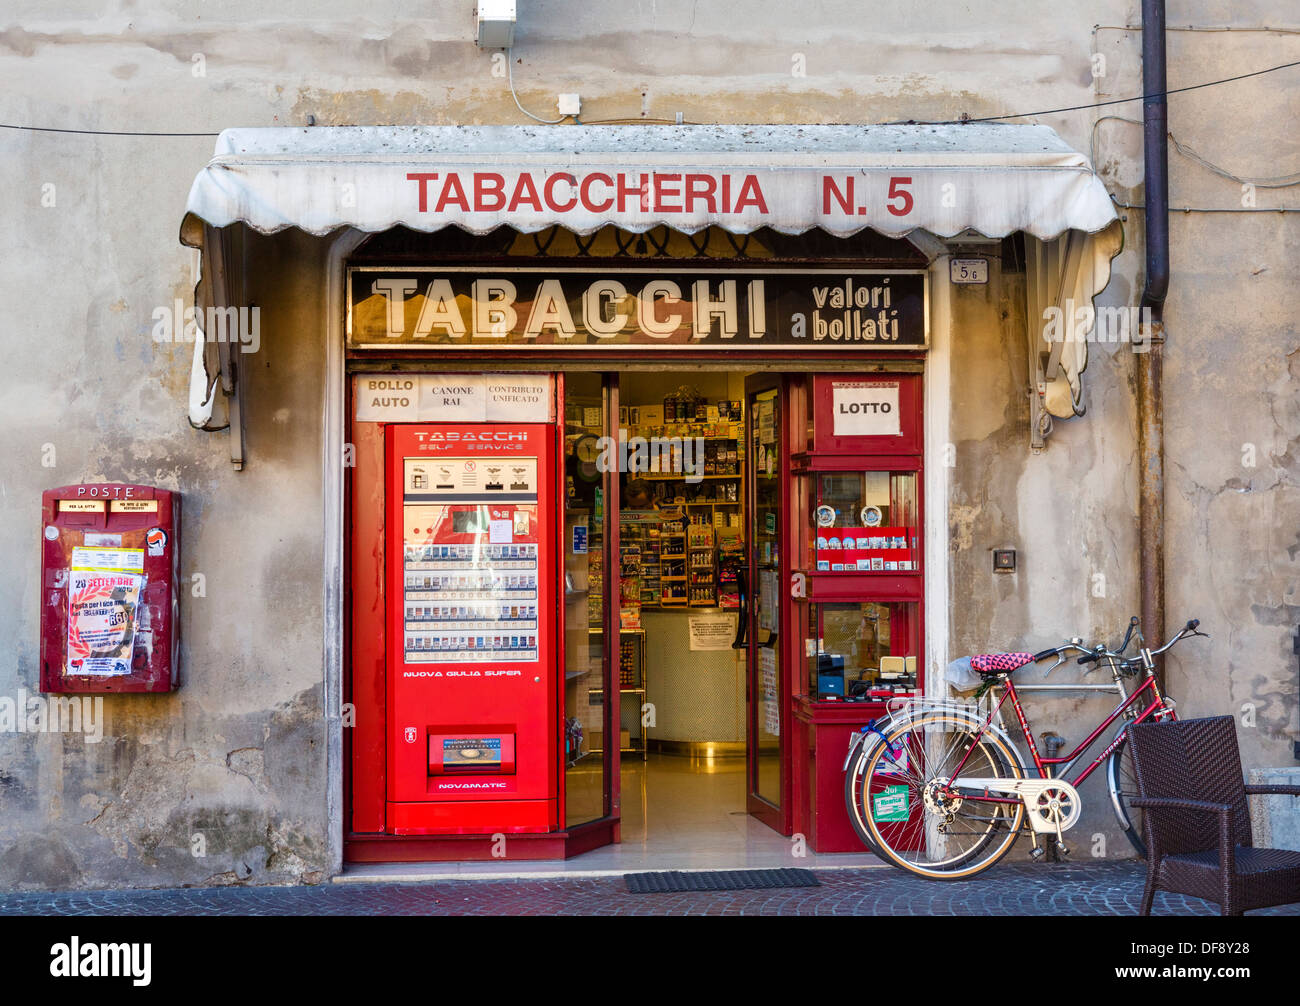 Traditional tobacconist shop in Piazza Prampolini, Reggio Emila (Reggio nell'Emilia), Emilia Romagna, Italy Stock Photo